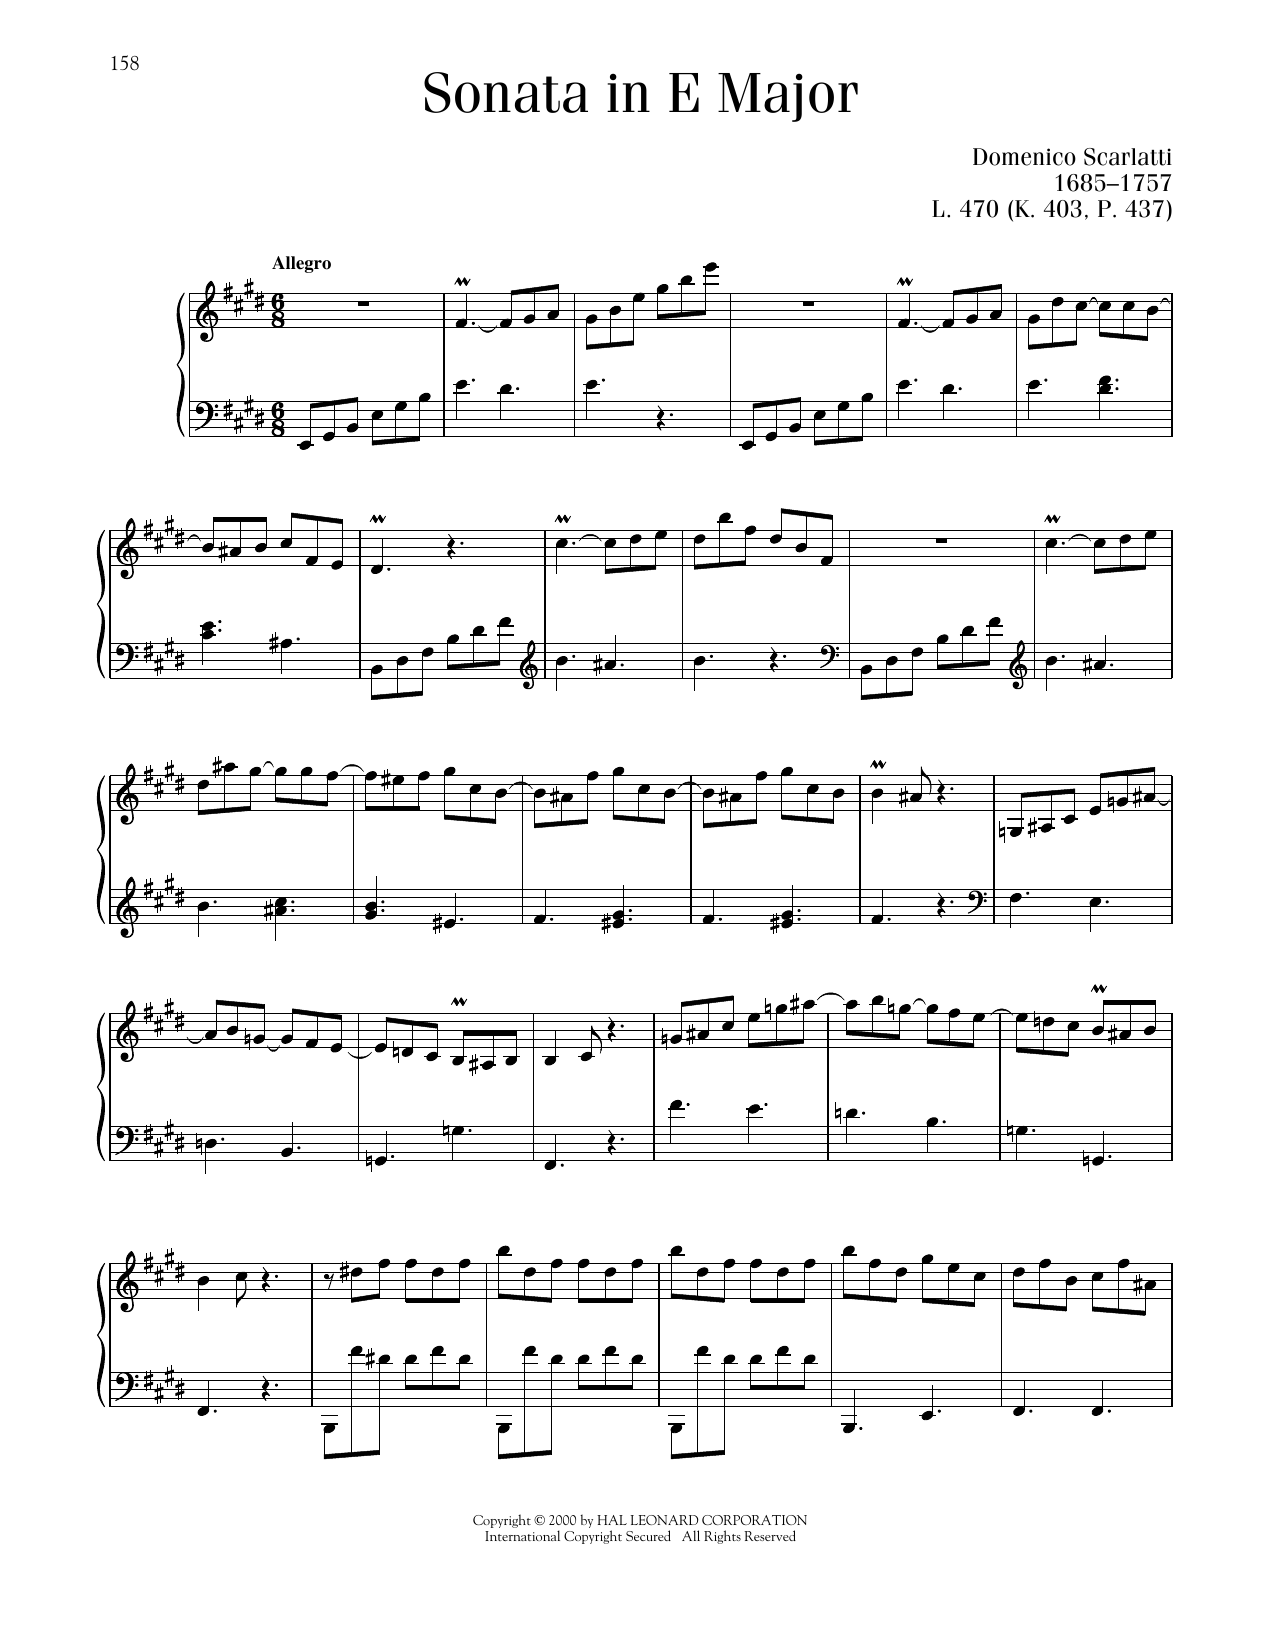 Domenico Scarlatti Sonata In E Major, K. 403 sheet music notes printable PDF score